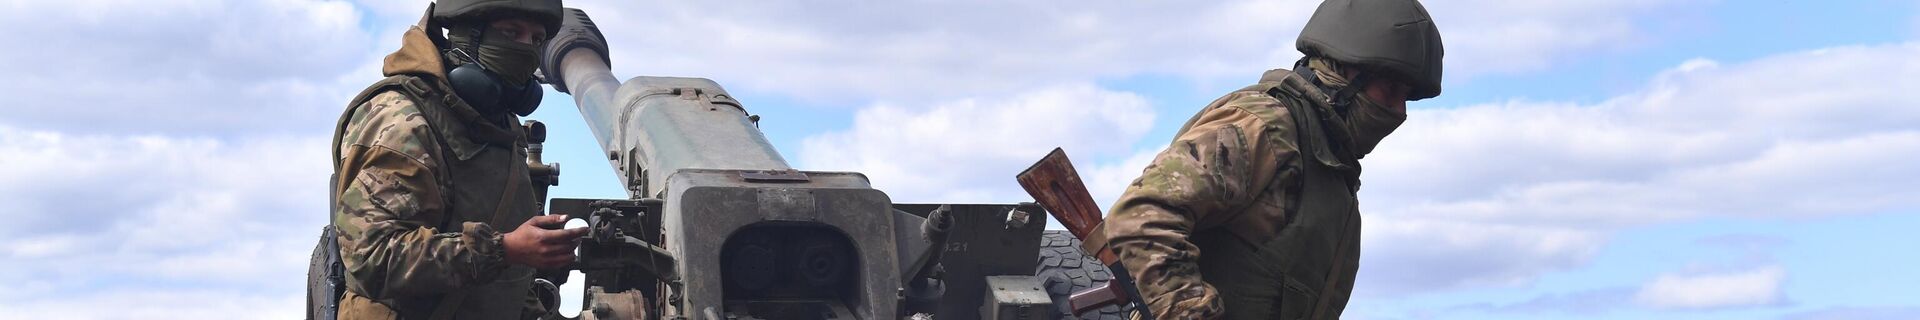 Работа артиллерийского расчета ЧВК Вагнер под Бахмутом в ДНР - Sputnik Кыргызстан, 1920, 28.02.2022